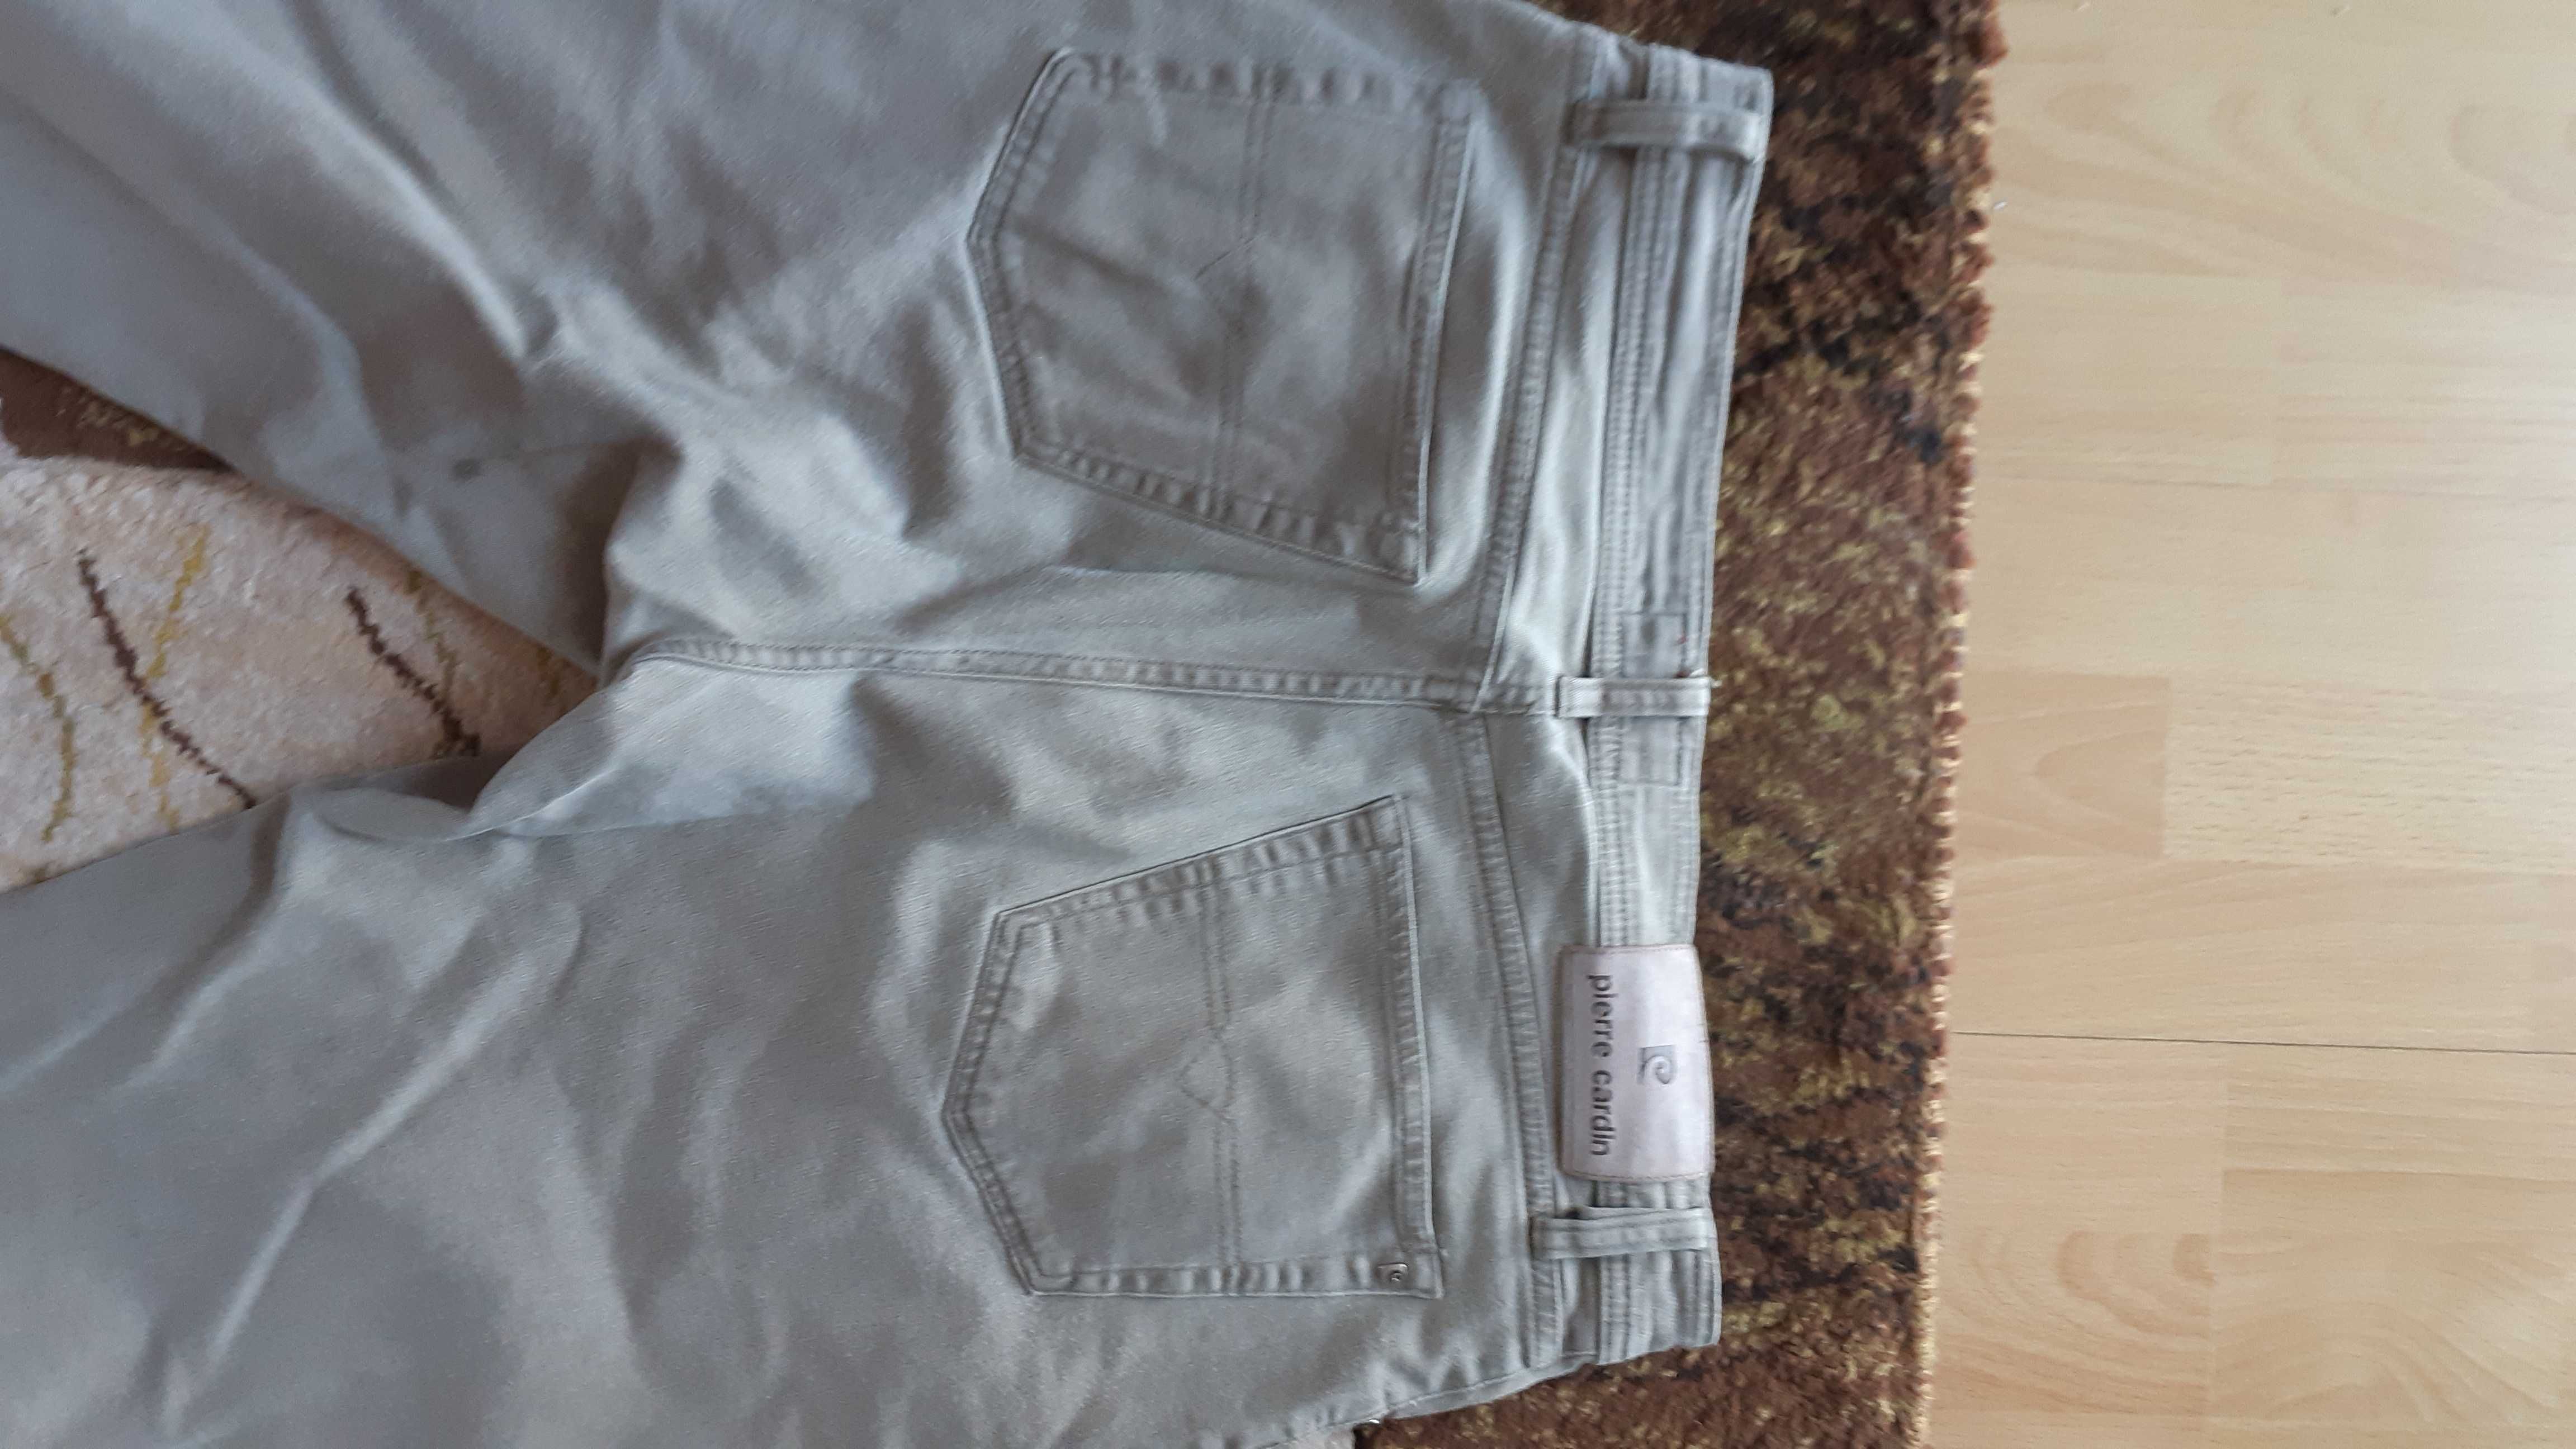 Pierre Cardin jeans 36/34 spodnie męskie